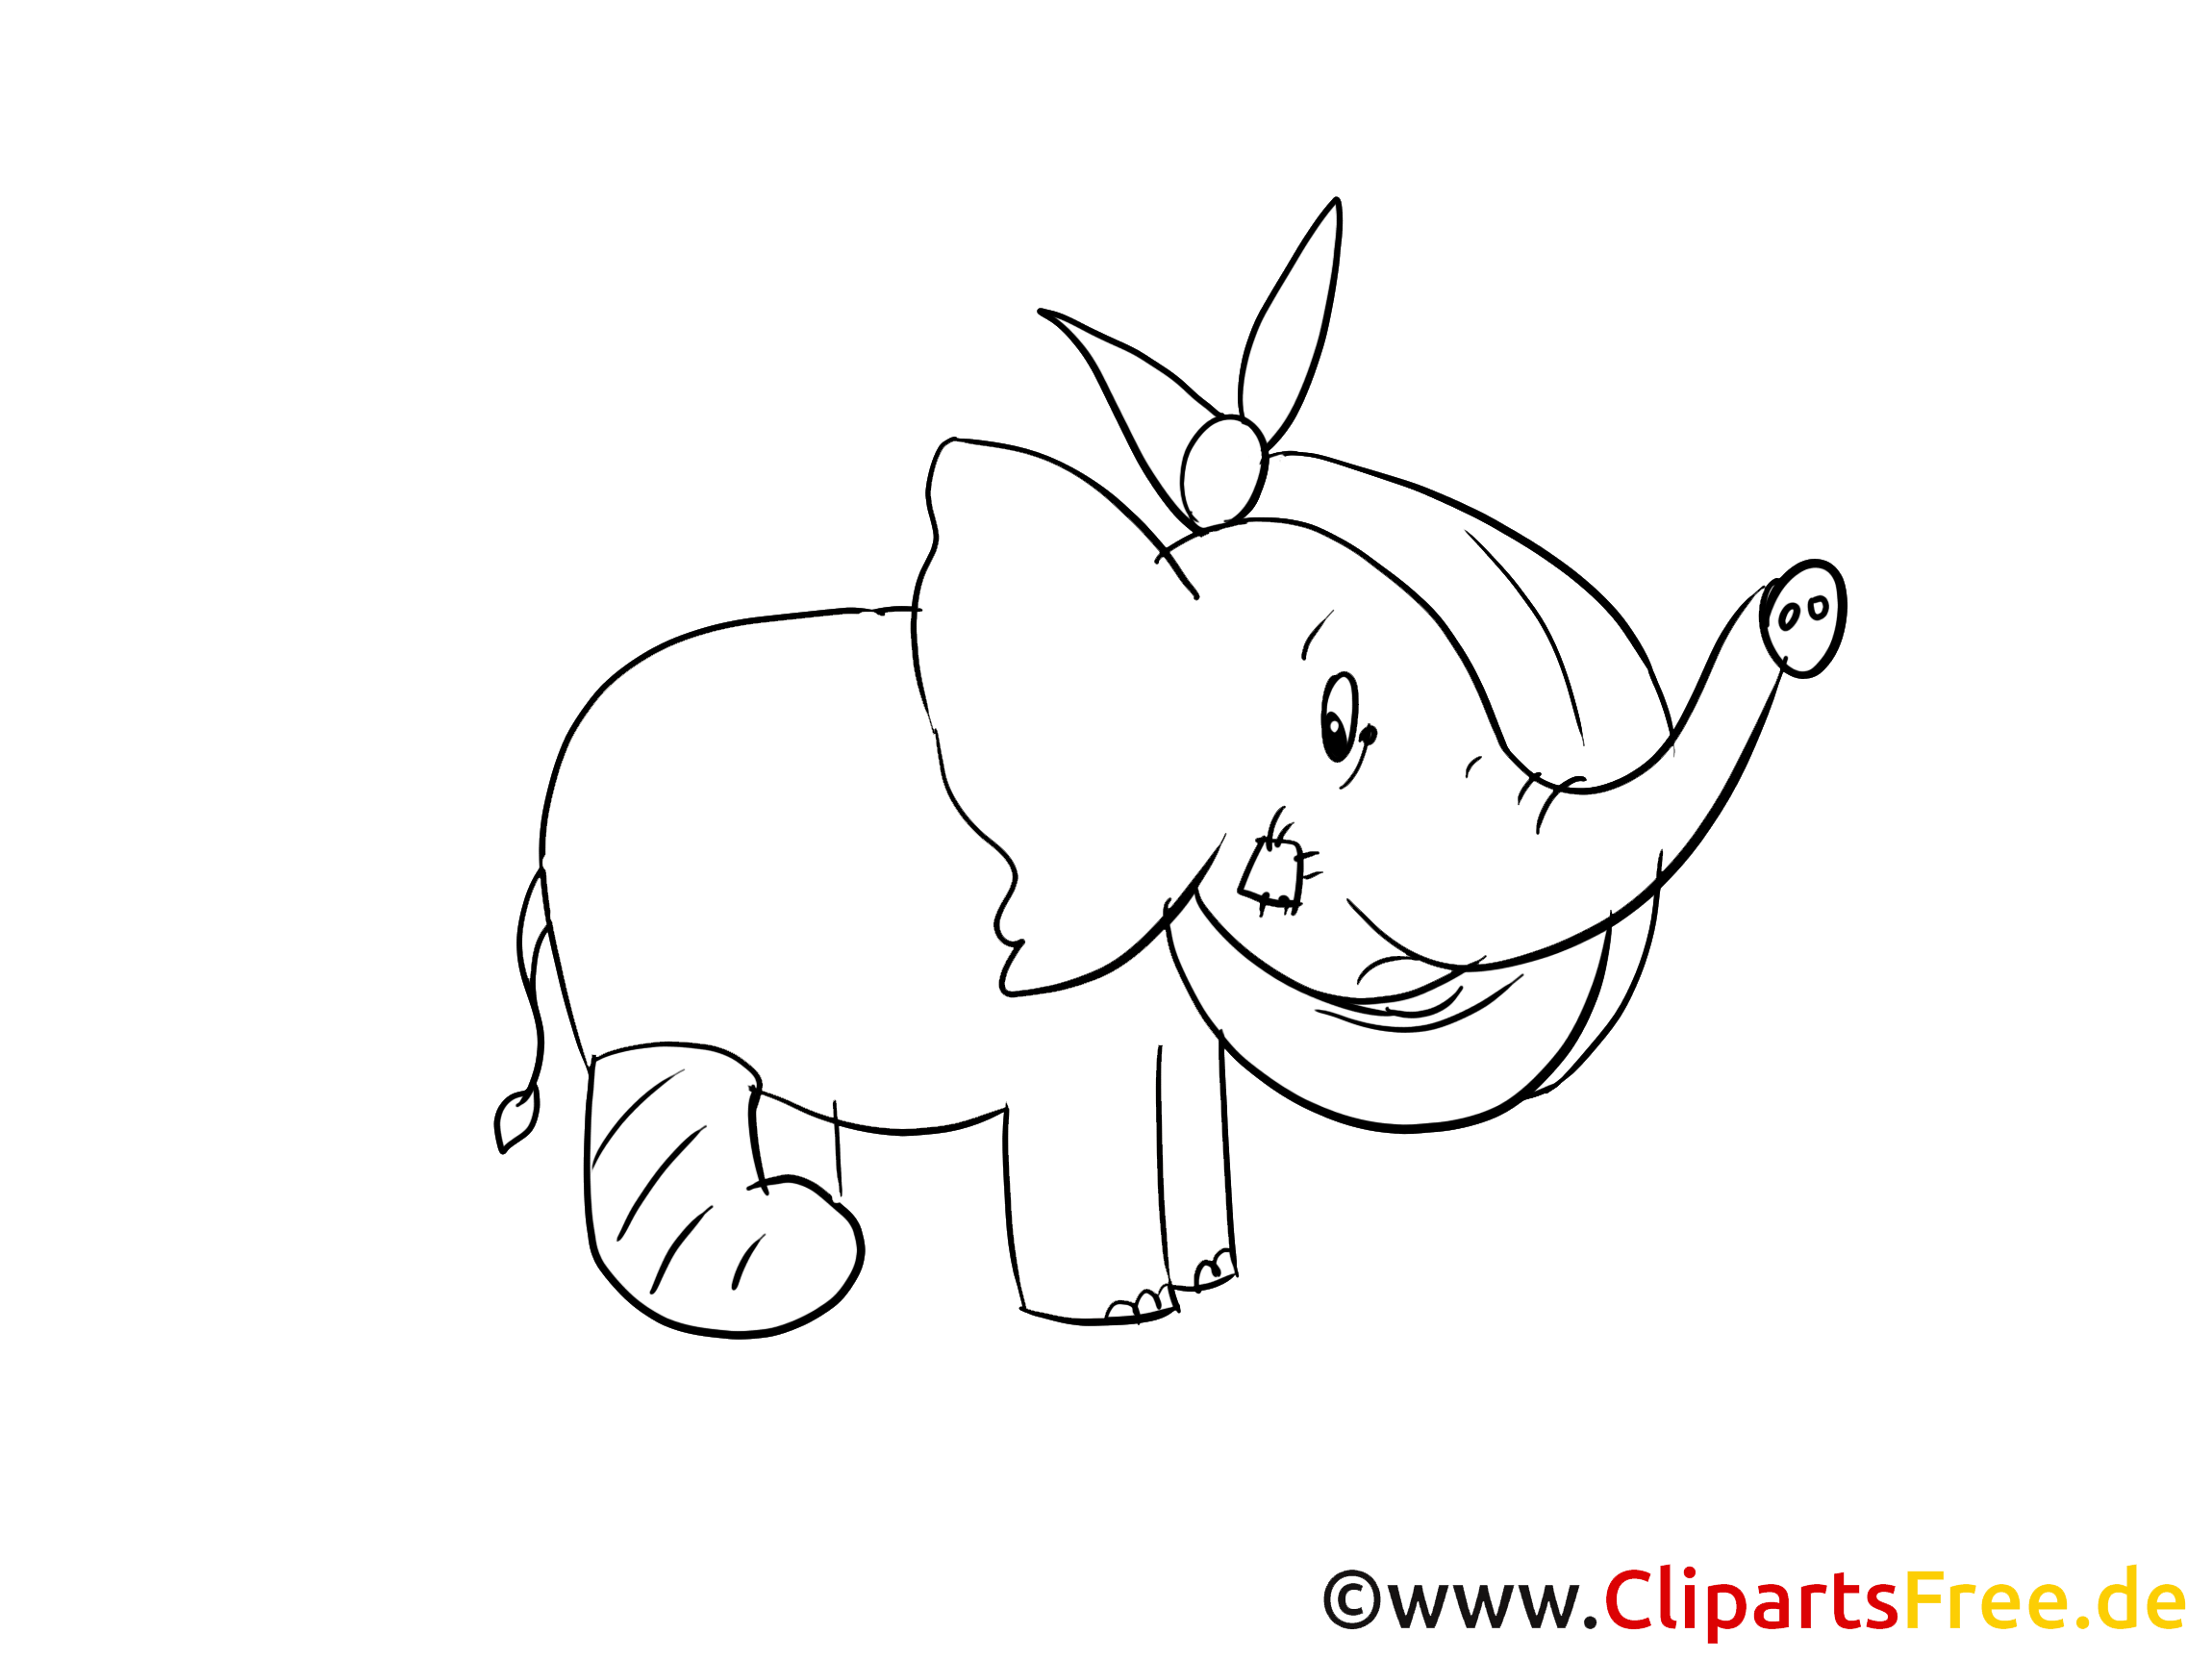 léphant illustration à colorier - Guéris vite clipart